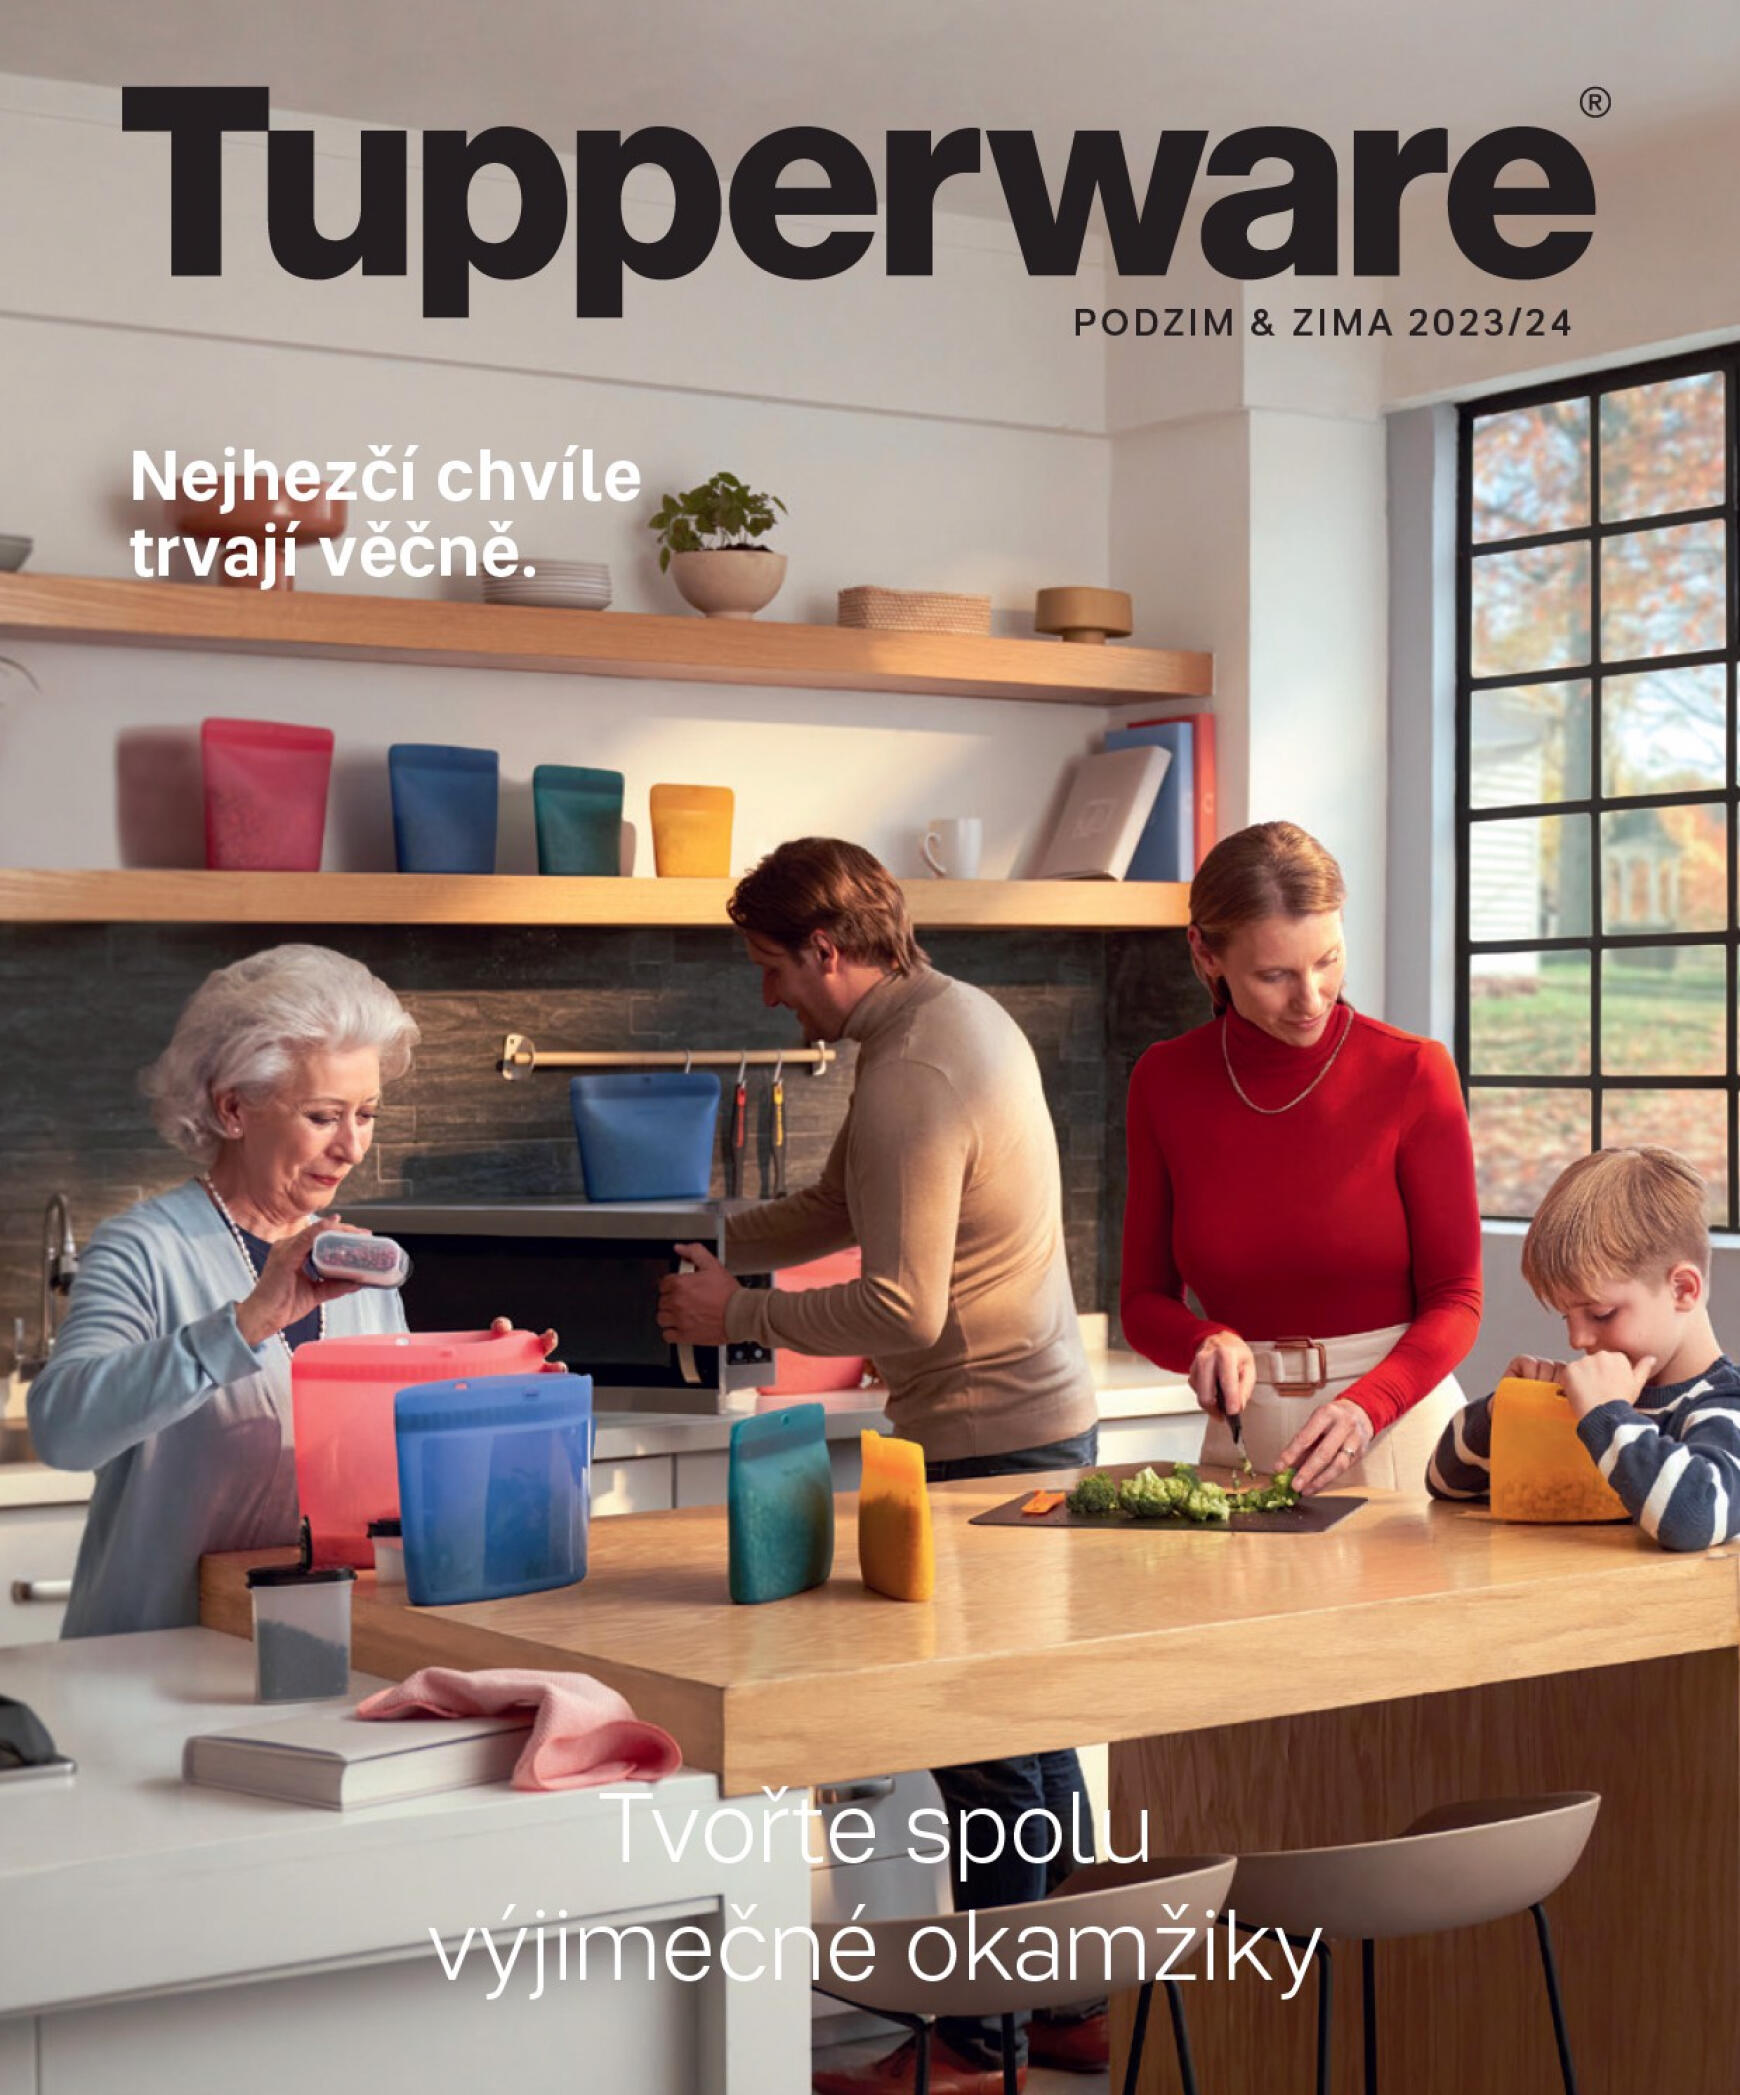 tupperware - Tupperware - PODZIM & ZIMA 2023/24 platný od 01.09.2023 - page: 1